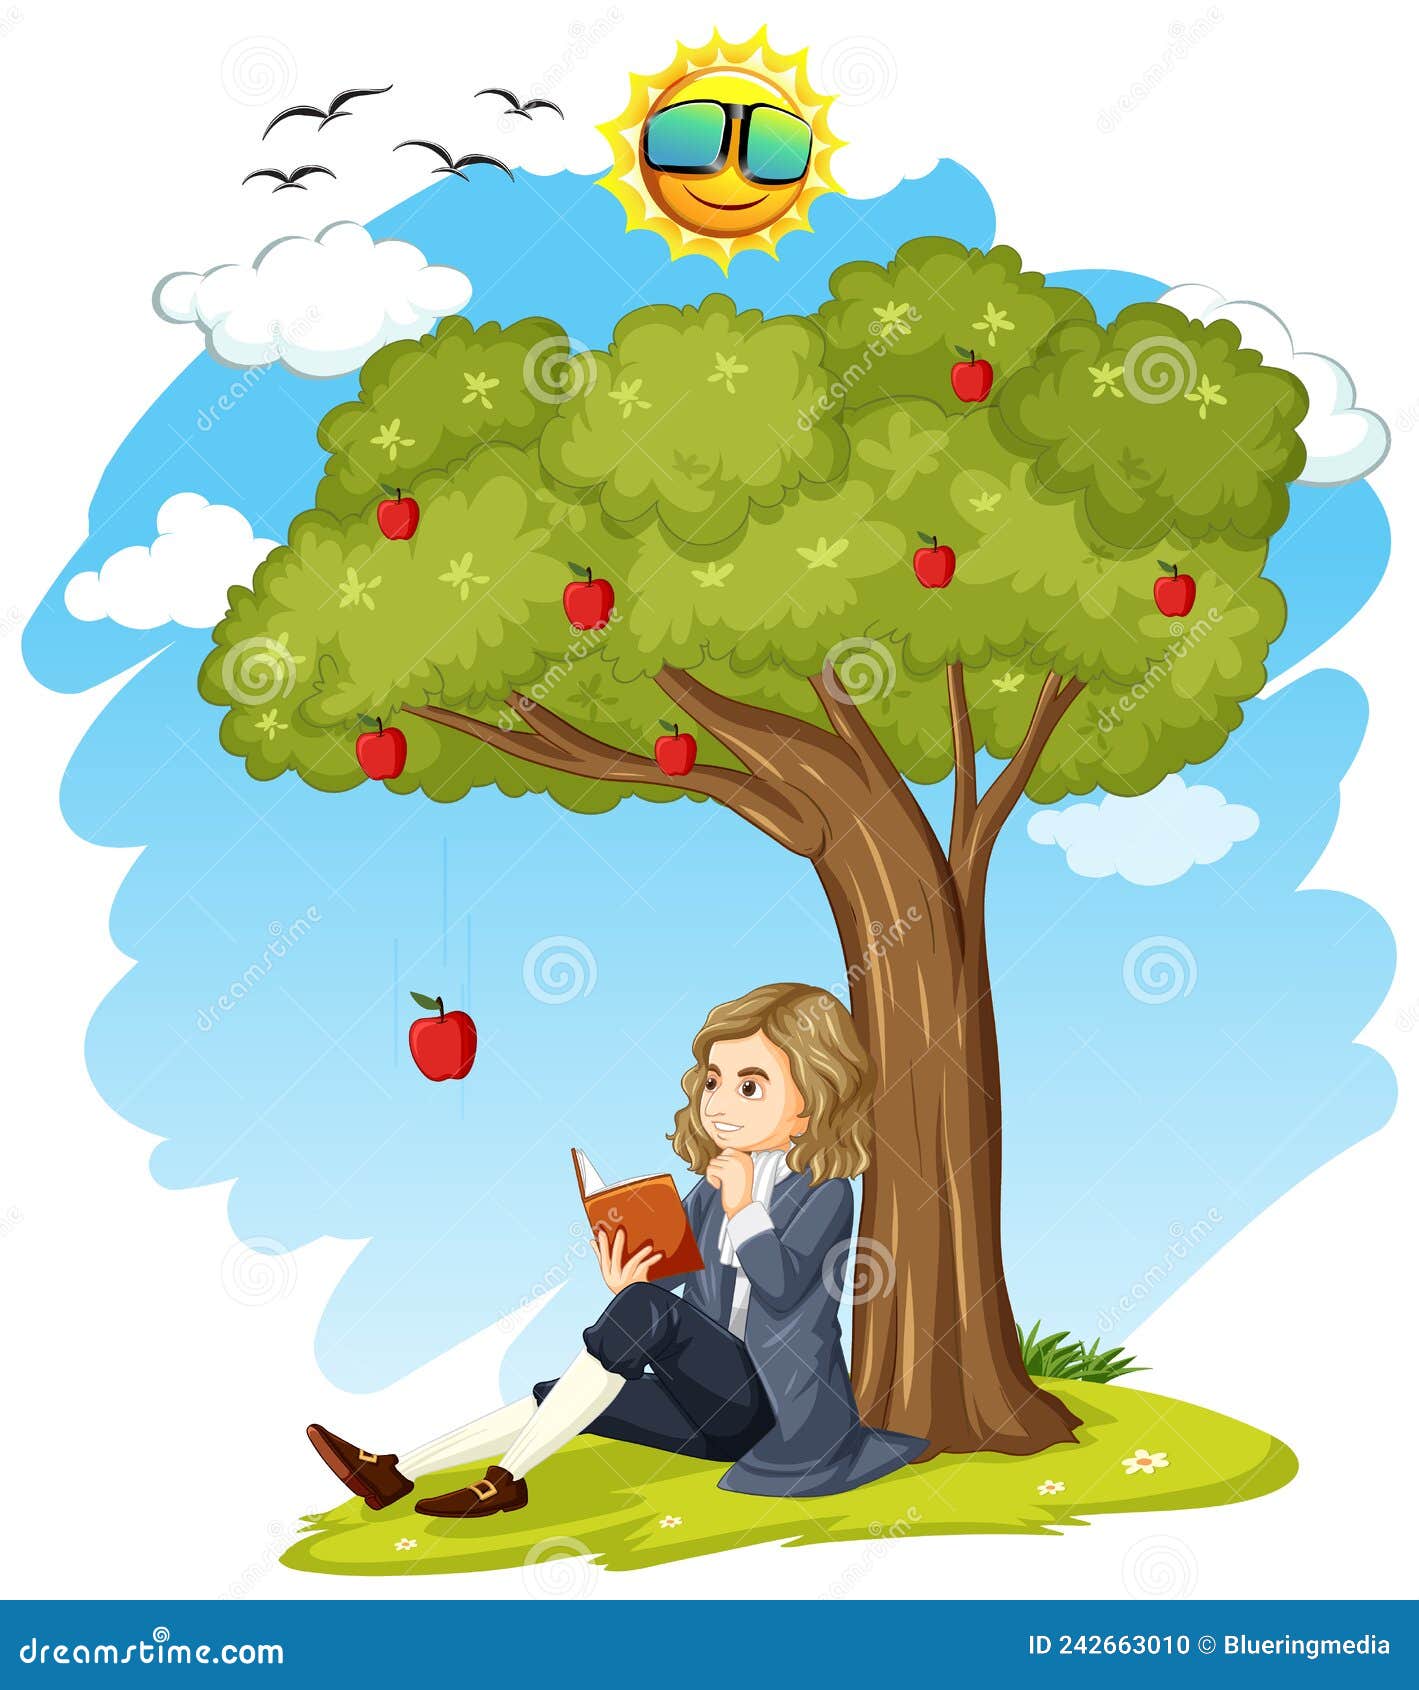 Isaac Newton Sitting Under Apple Tree Stock Vector - Illustration of ...